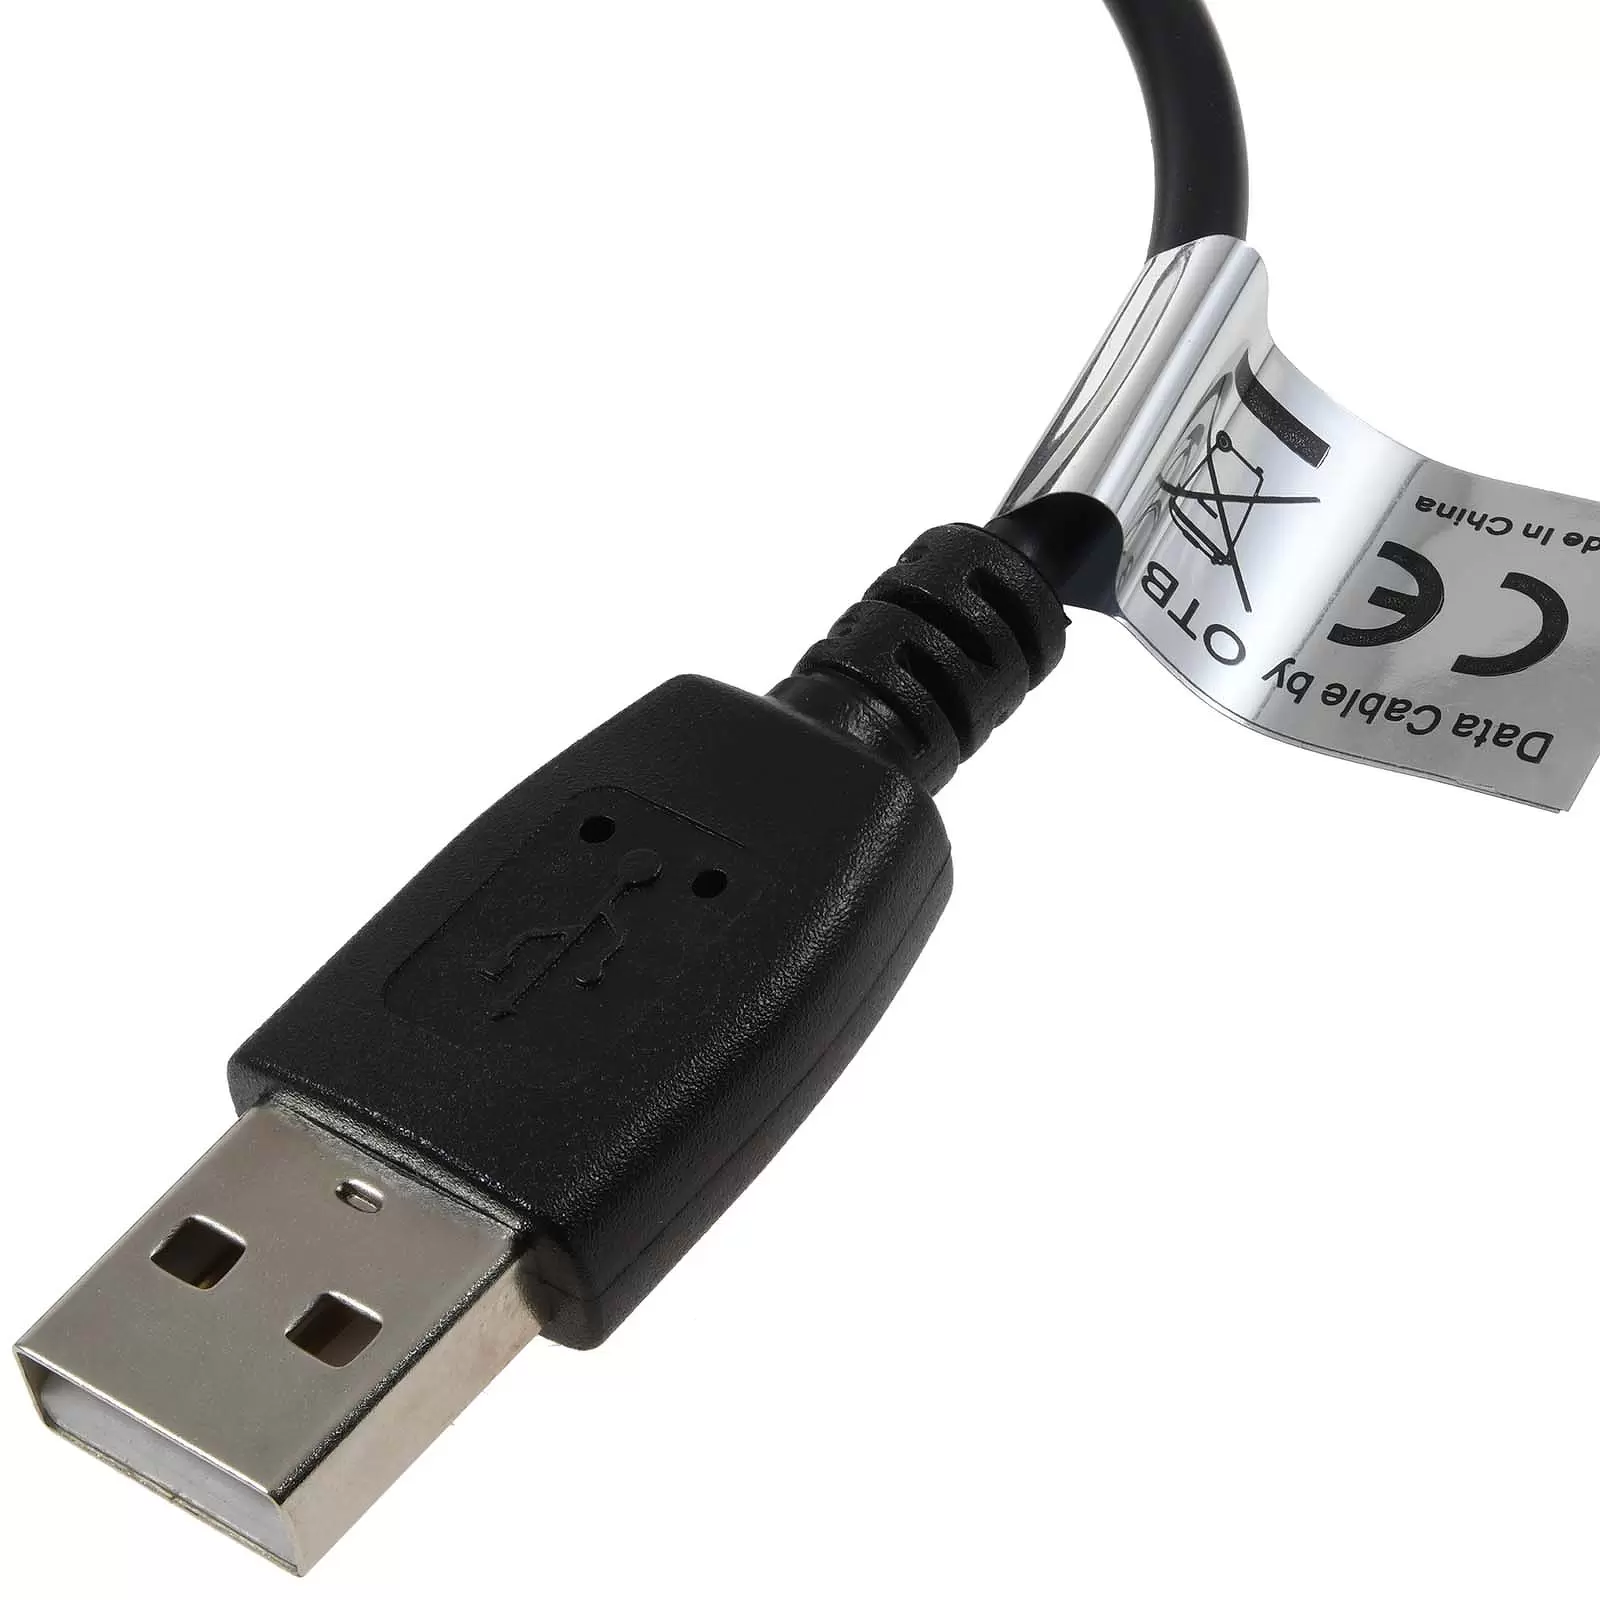 USB-Ladekabel für Nintendo 3DS / 2DS / DSi / DSi XL